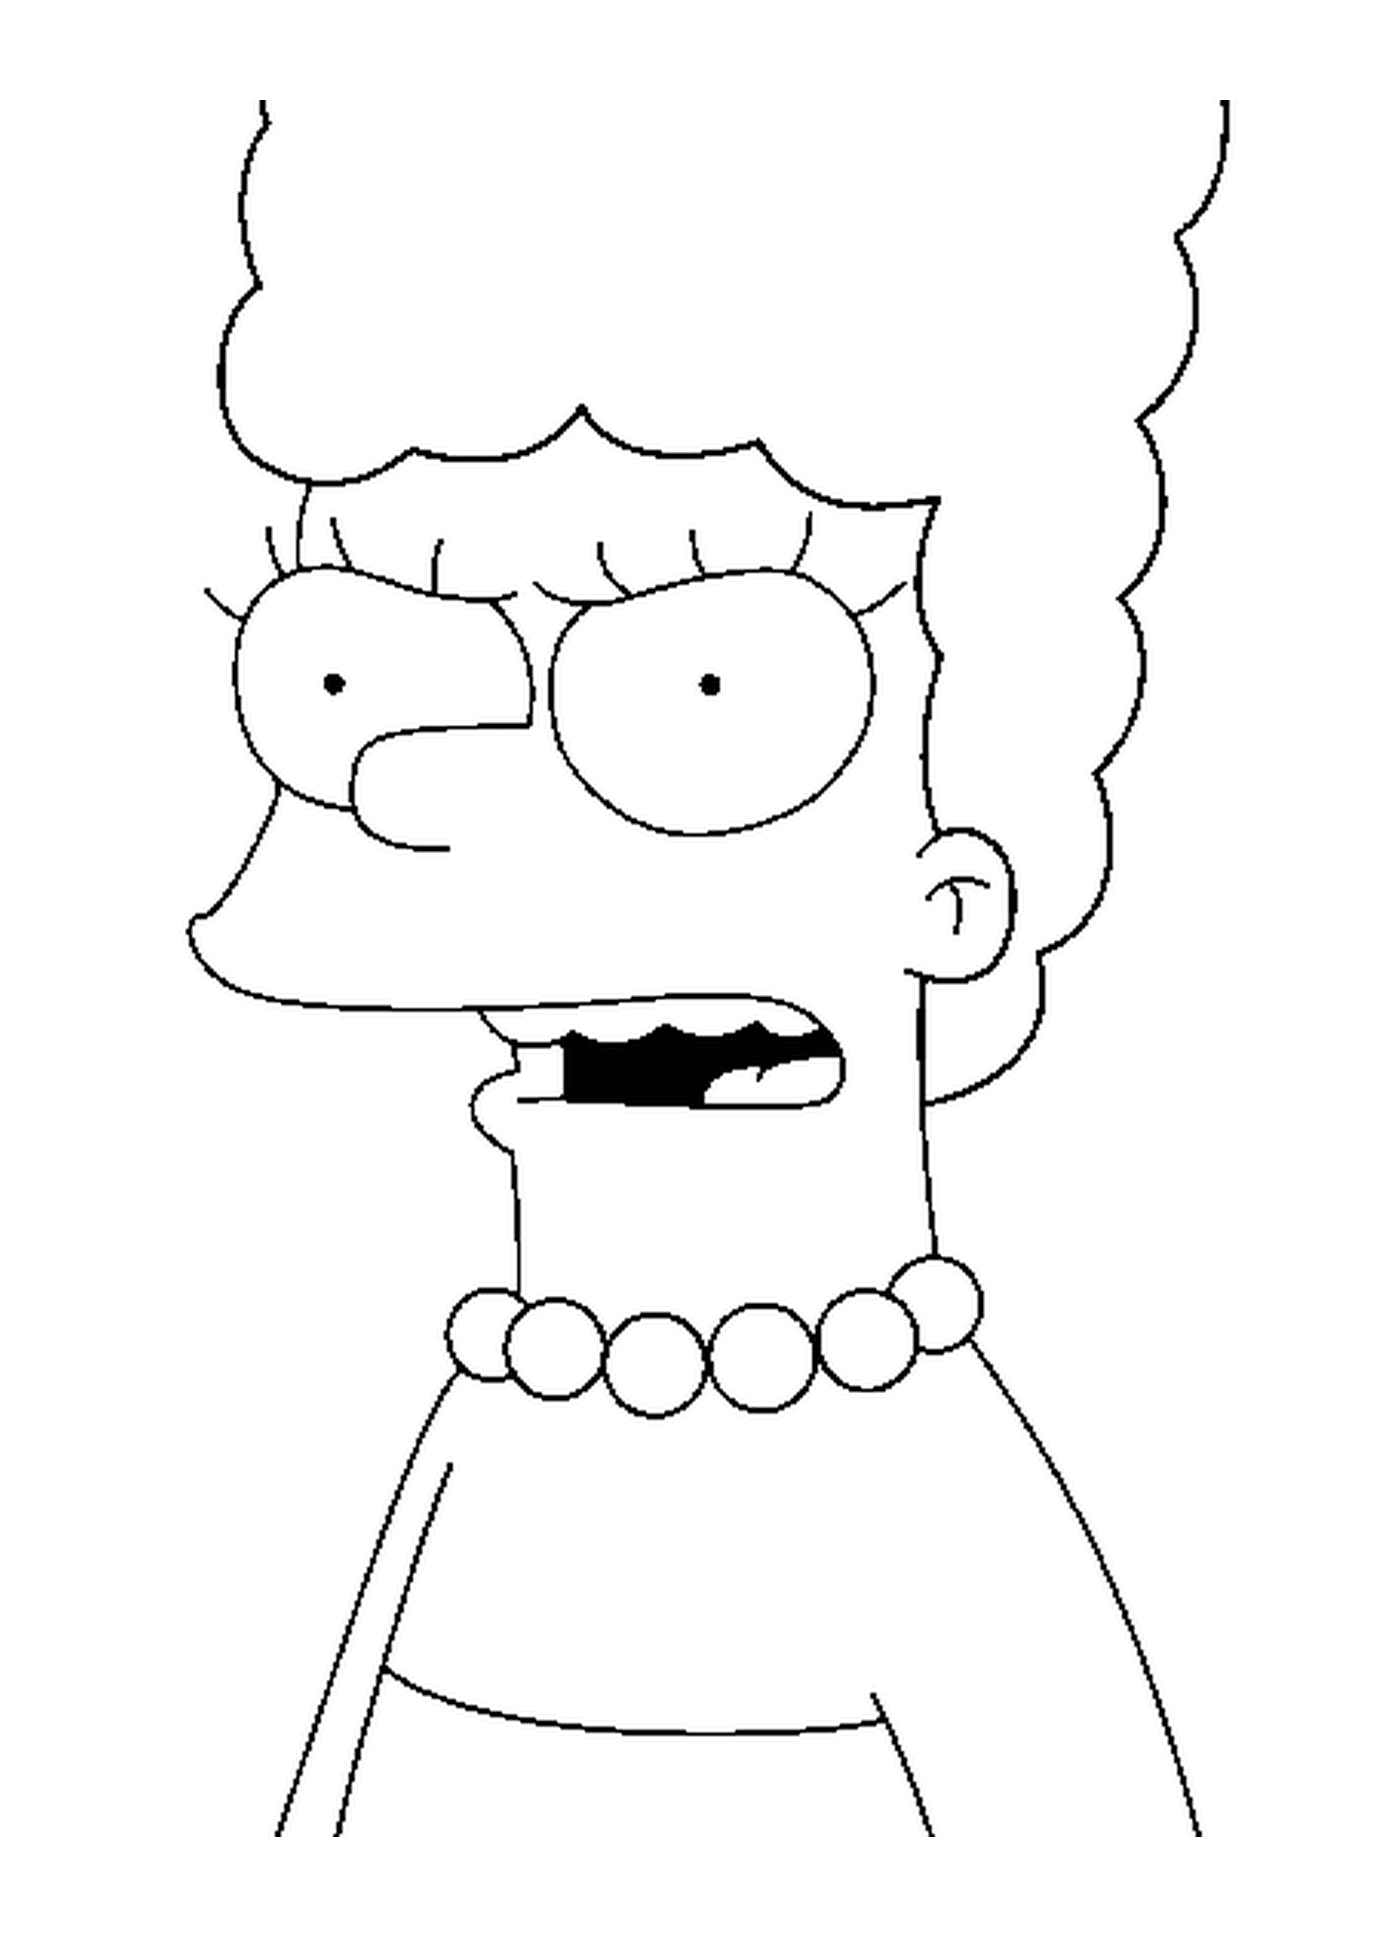  Мардж делает большие глаза 